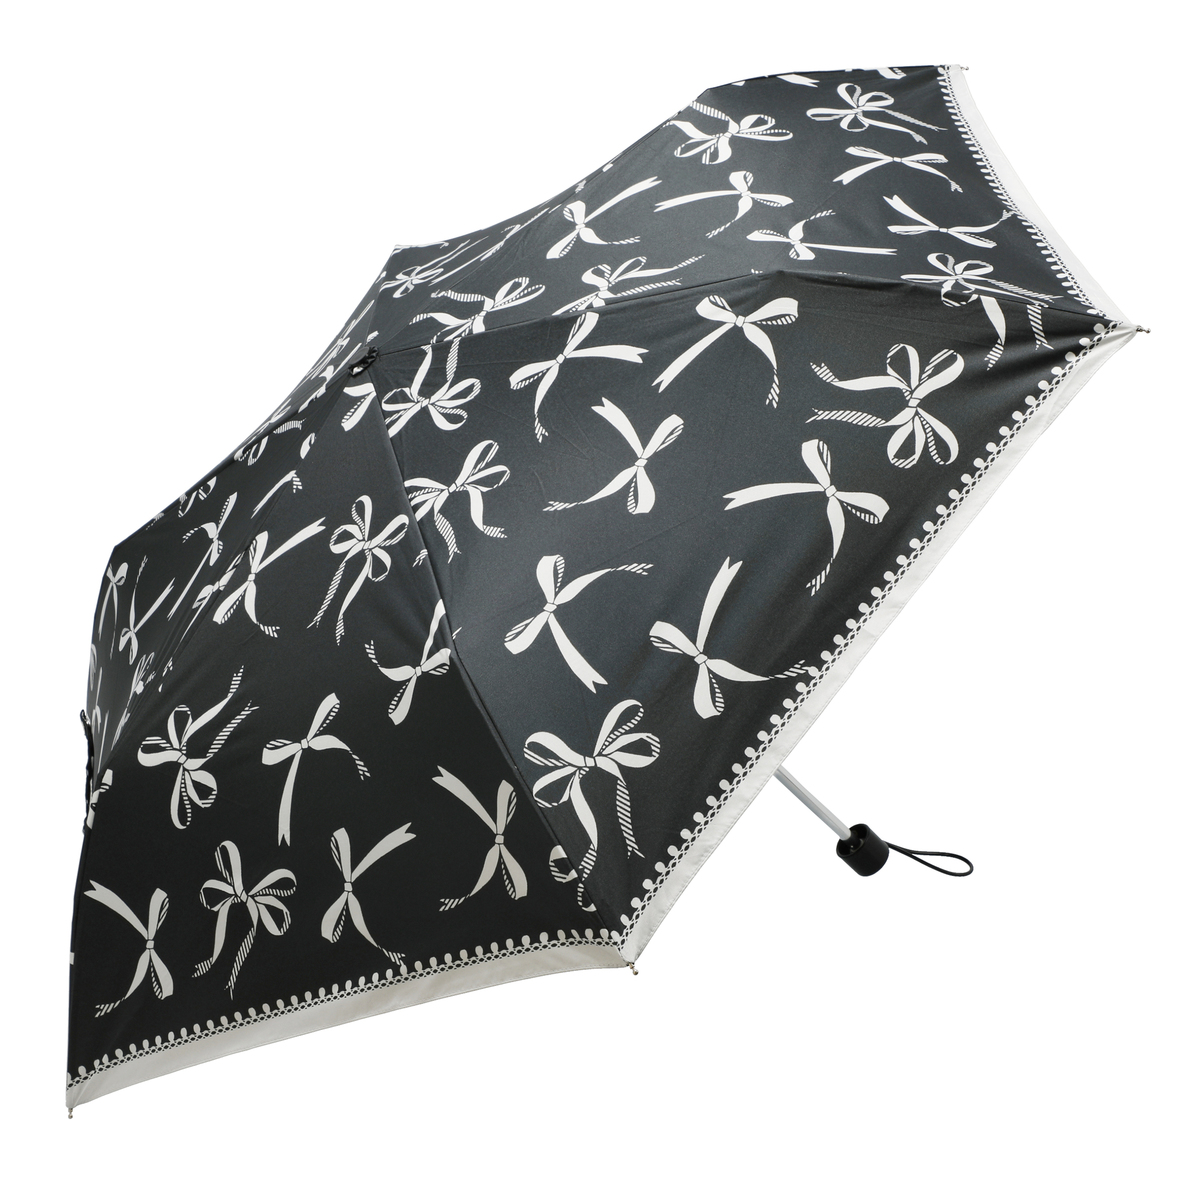  ルナジュメール UV+1級遮光+晴雨兼用 モノクロ 折傘  リボン柄ブラック